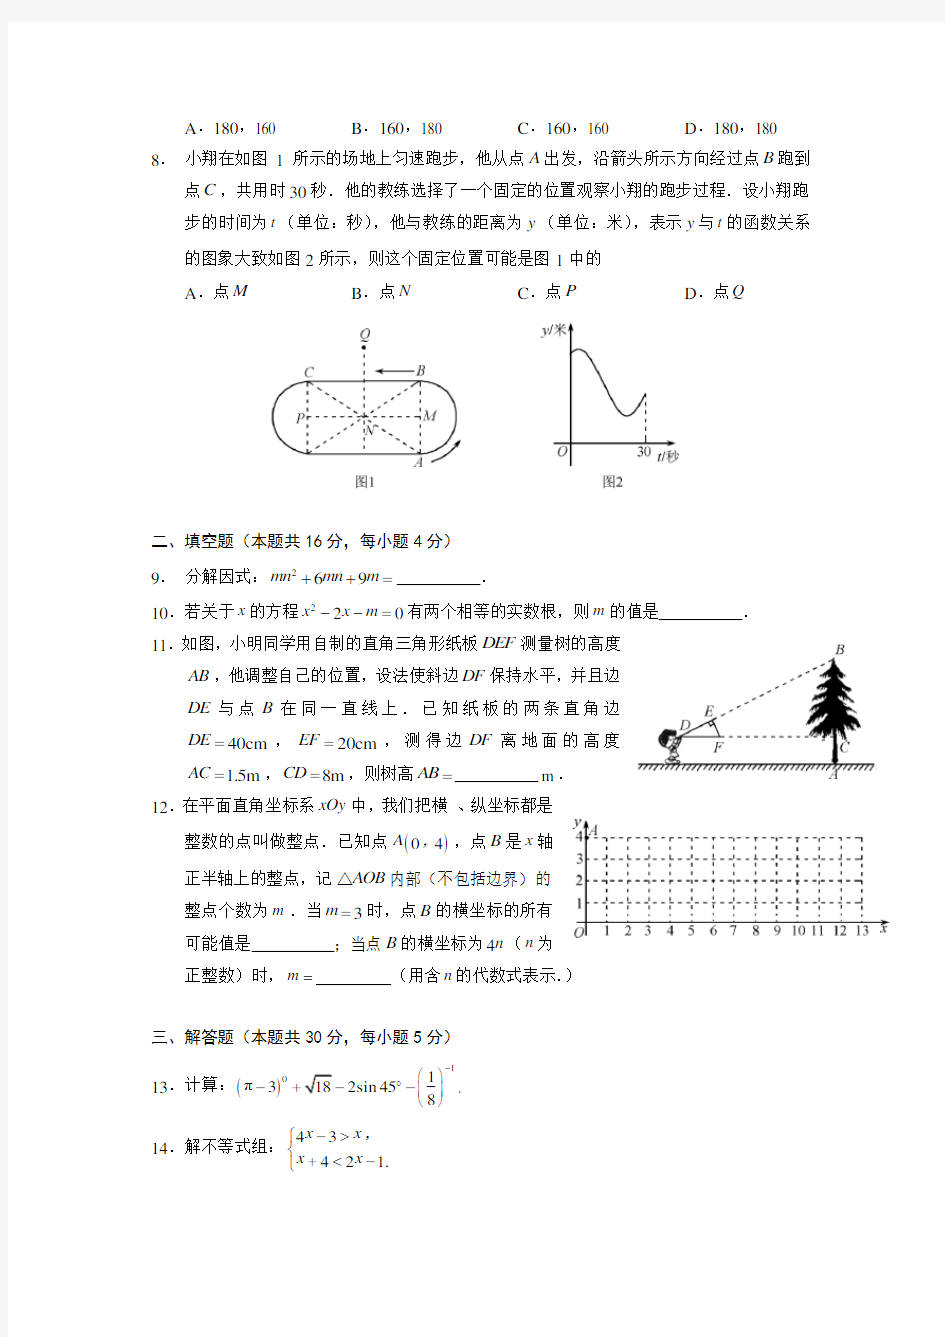 2012年北京中考数学真题试卷(附答案)